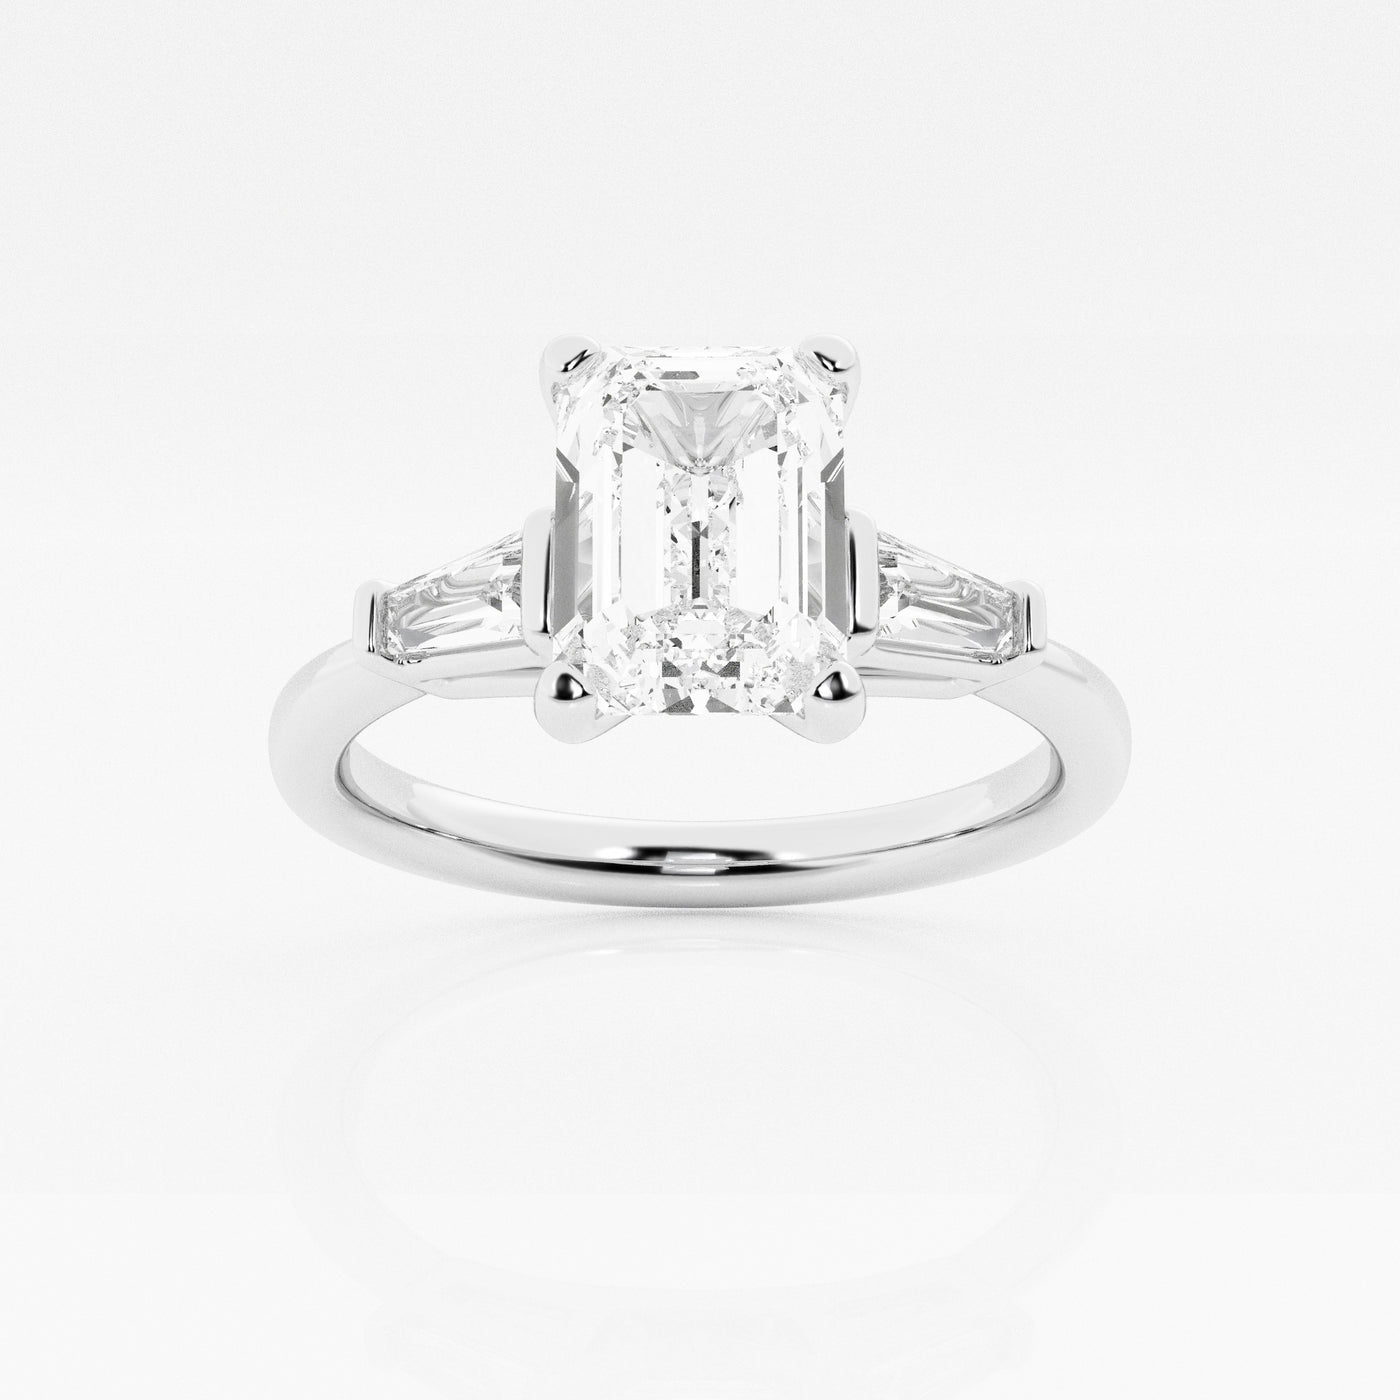 _main_image@SKU:LGR0617X3E200SOGW4~#carat_2.24#diamond-quality_fg,-vs2+#metal_18k-white-gold